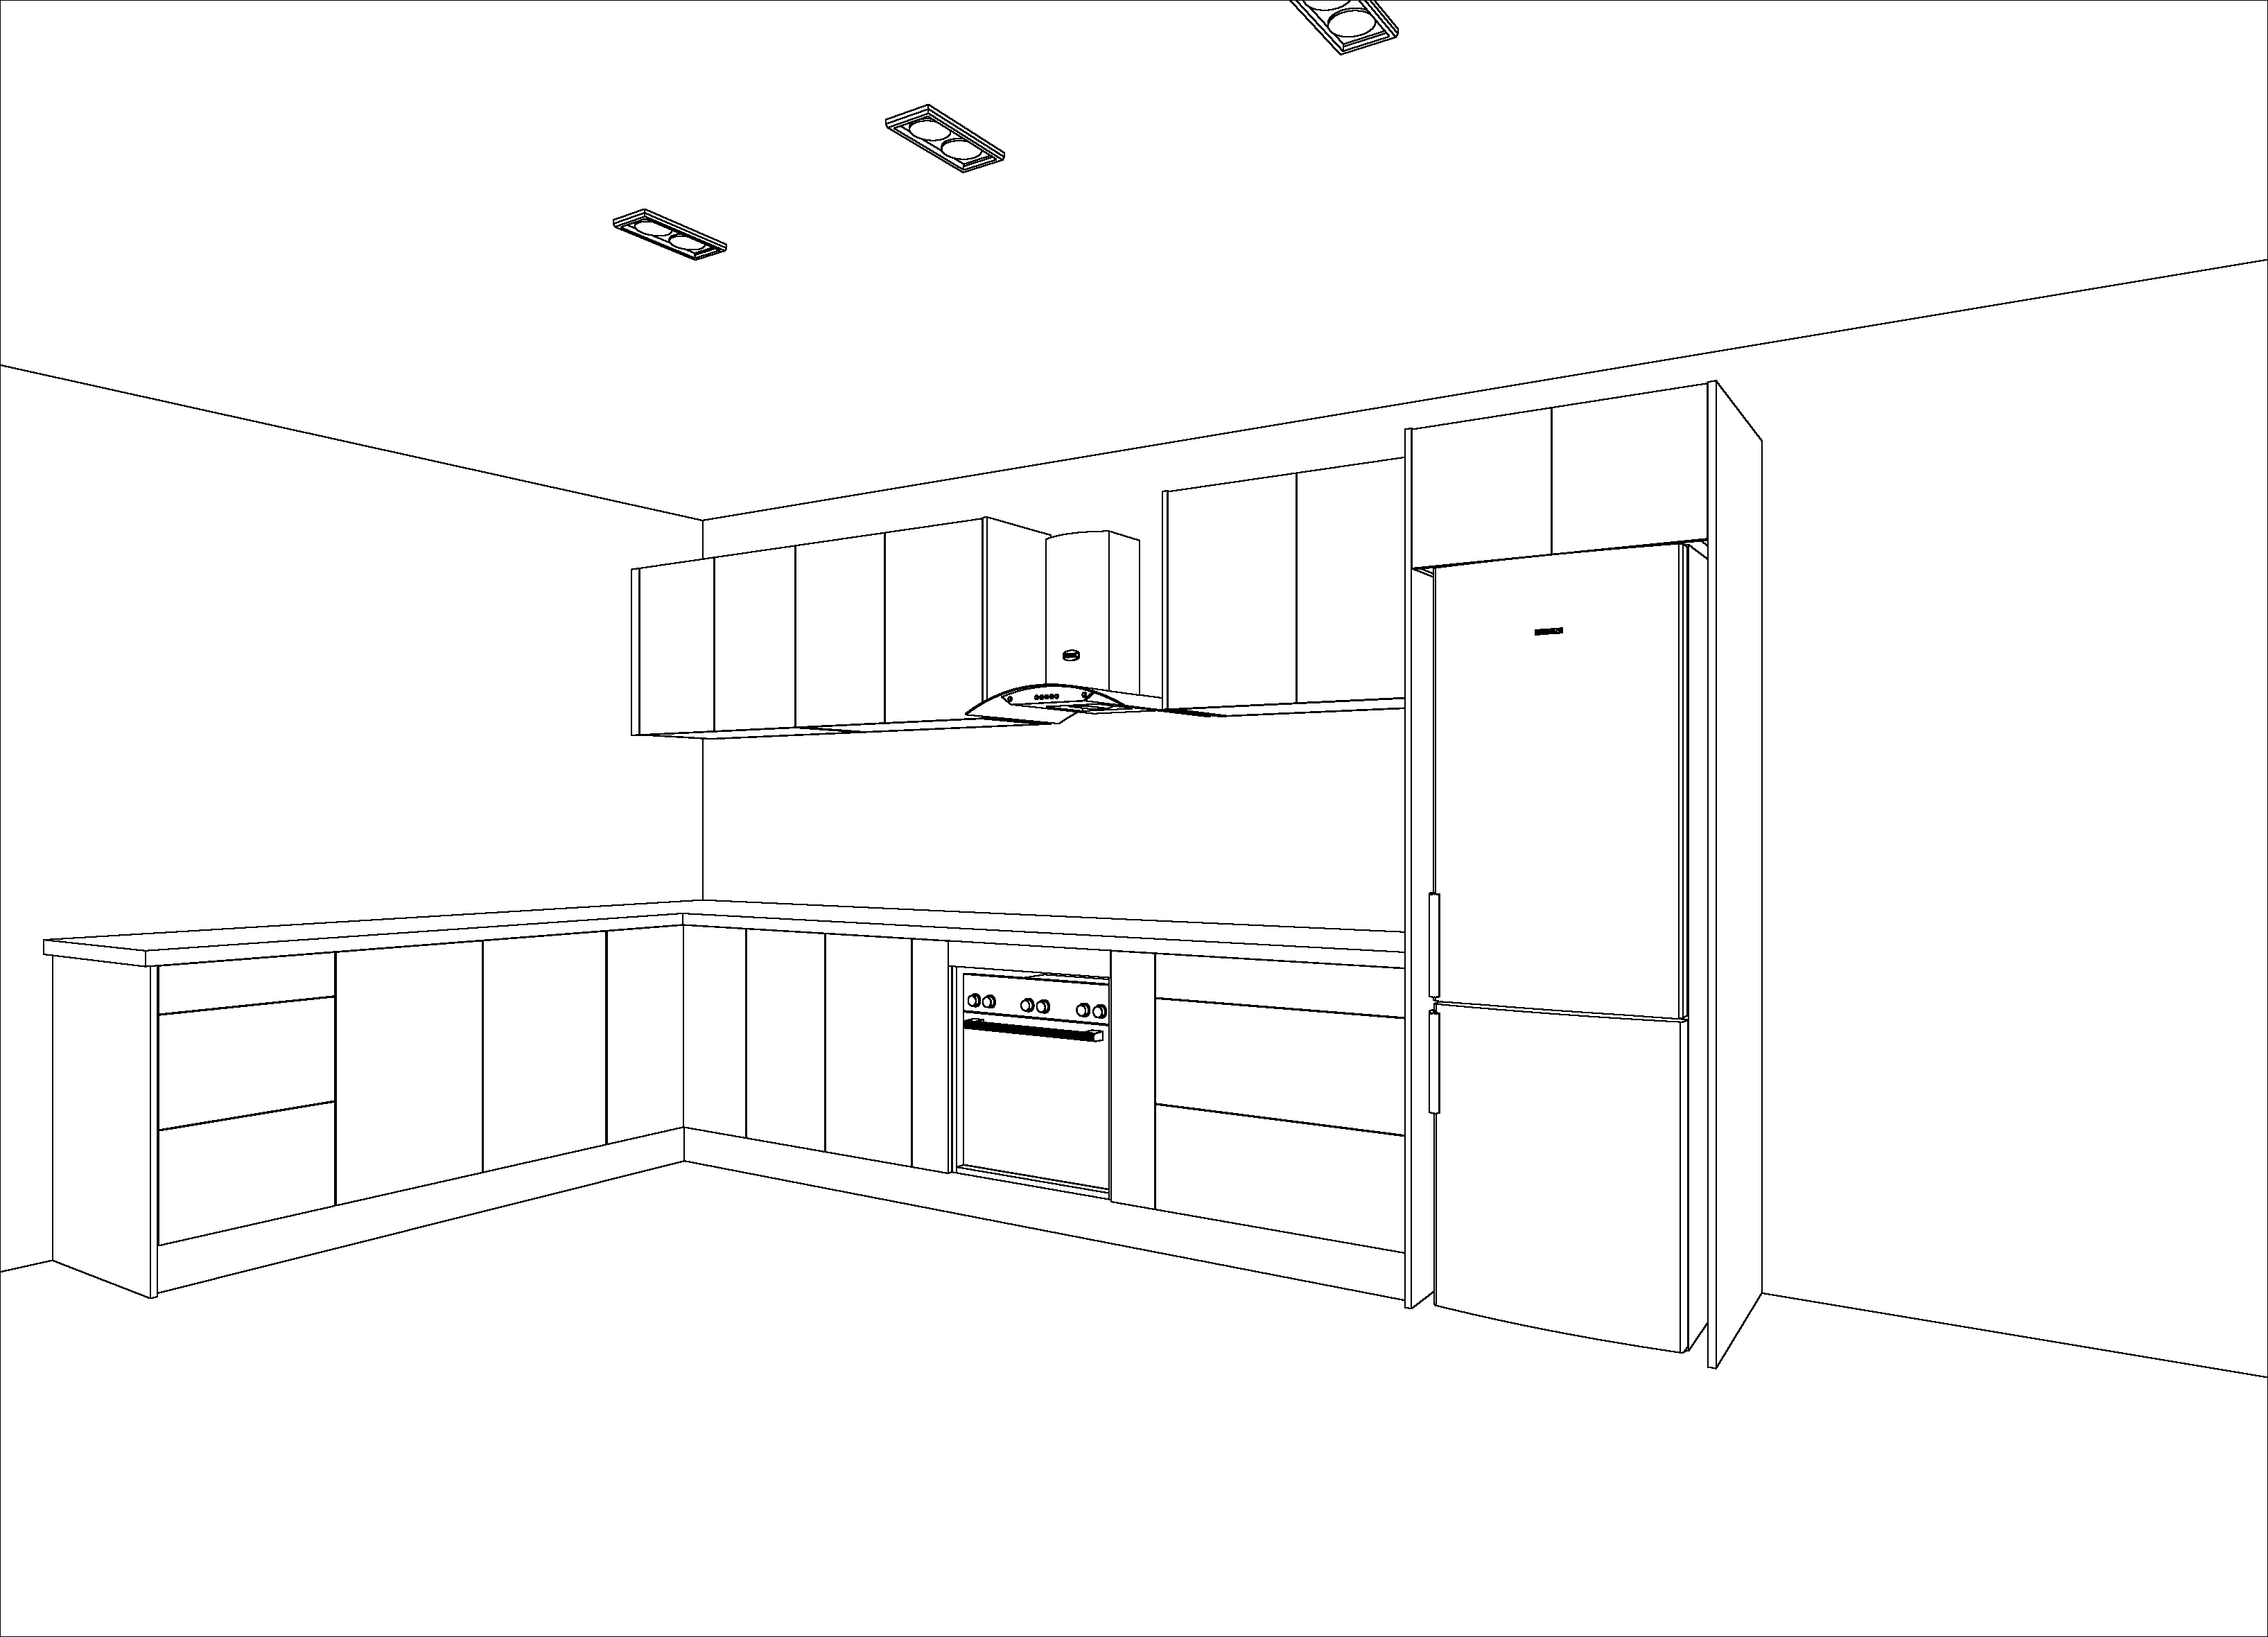 wireframe render of kitchen